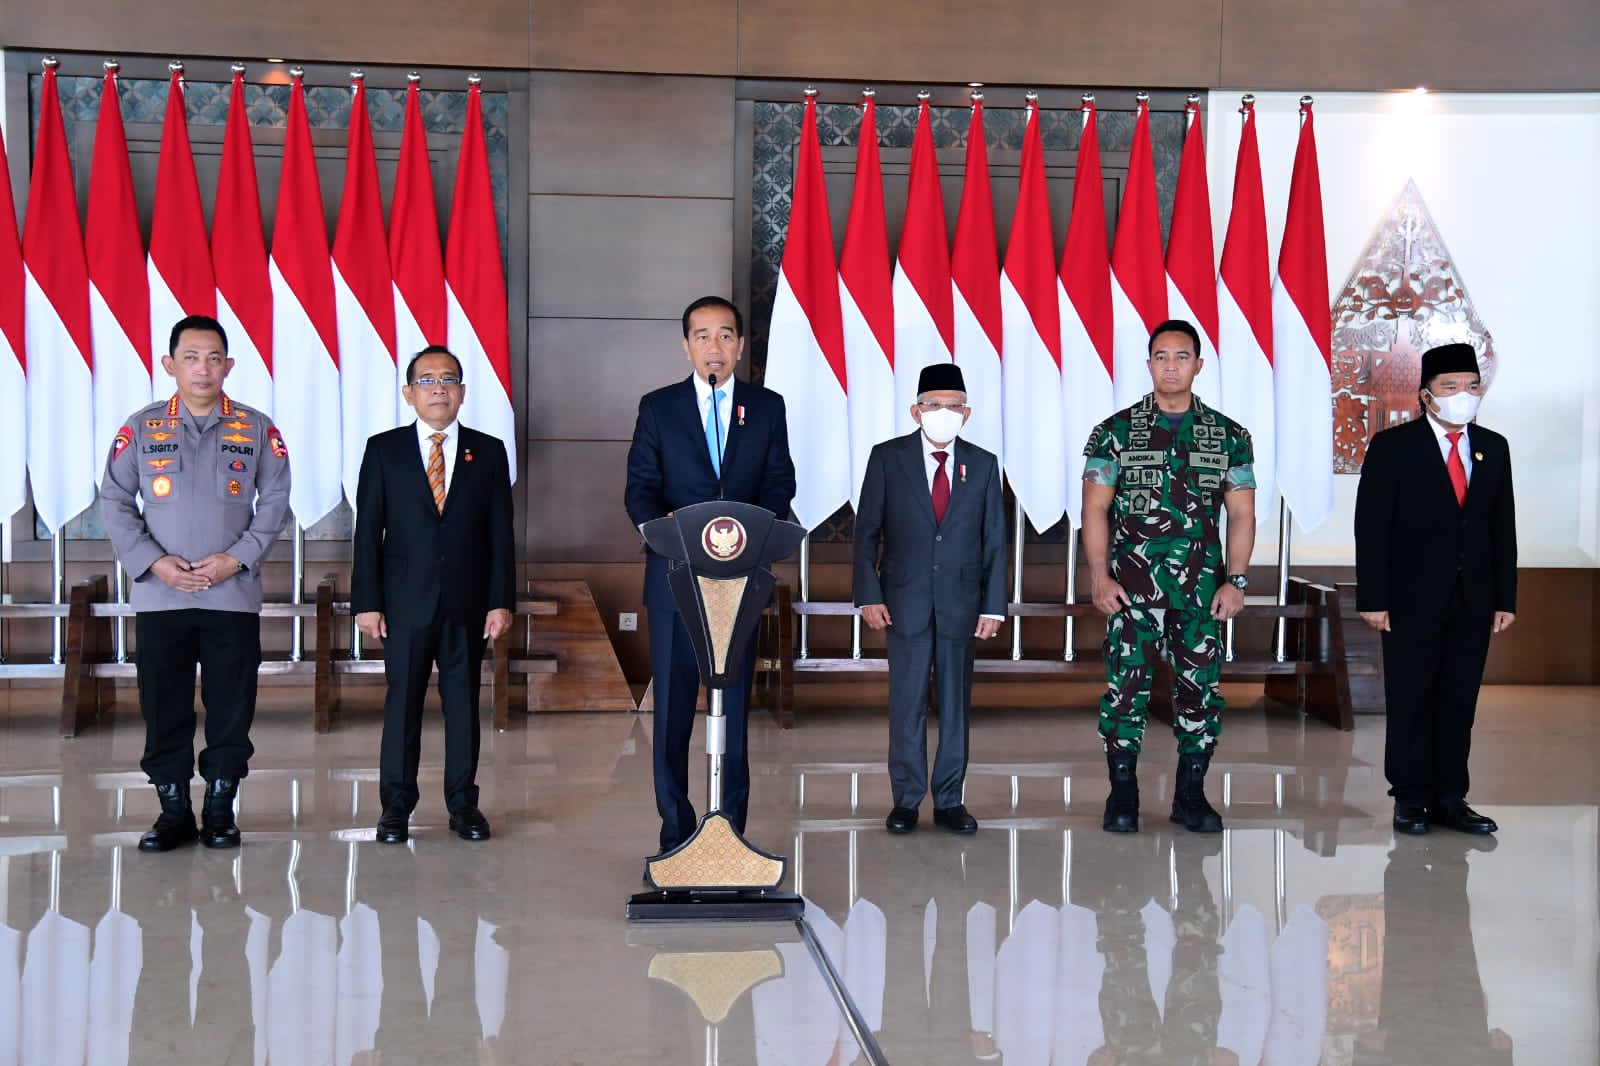 Presiden Jokowi Bertolak ke Brussel, Hadiri KTT ASEAN - EU 